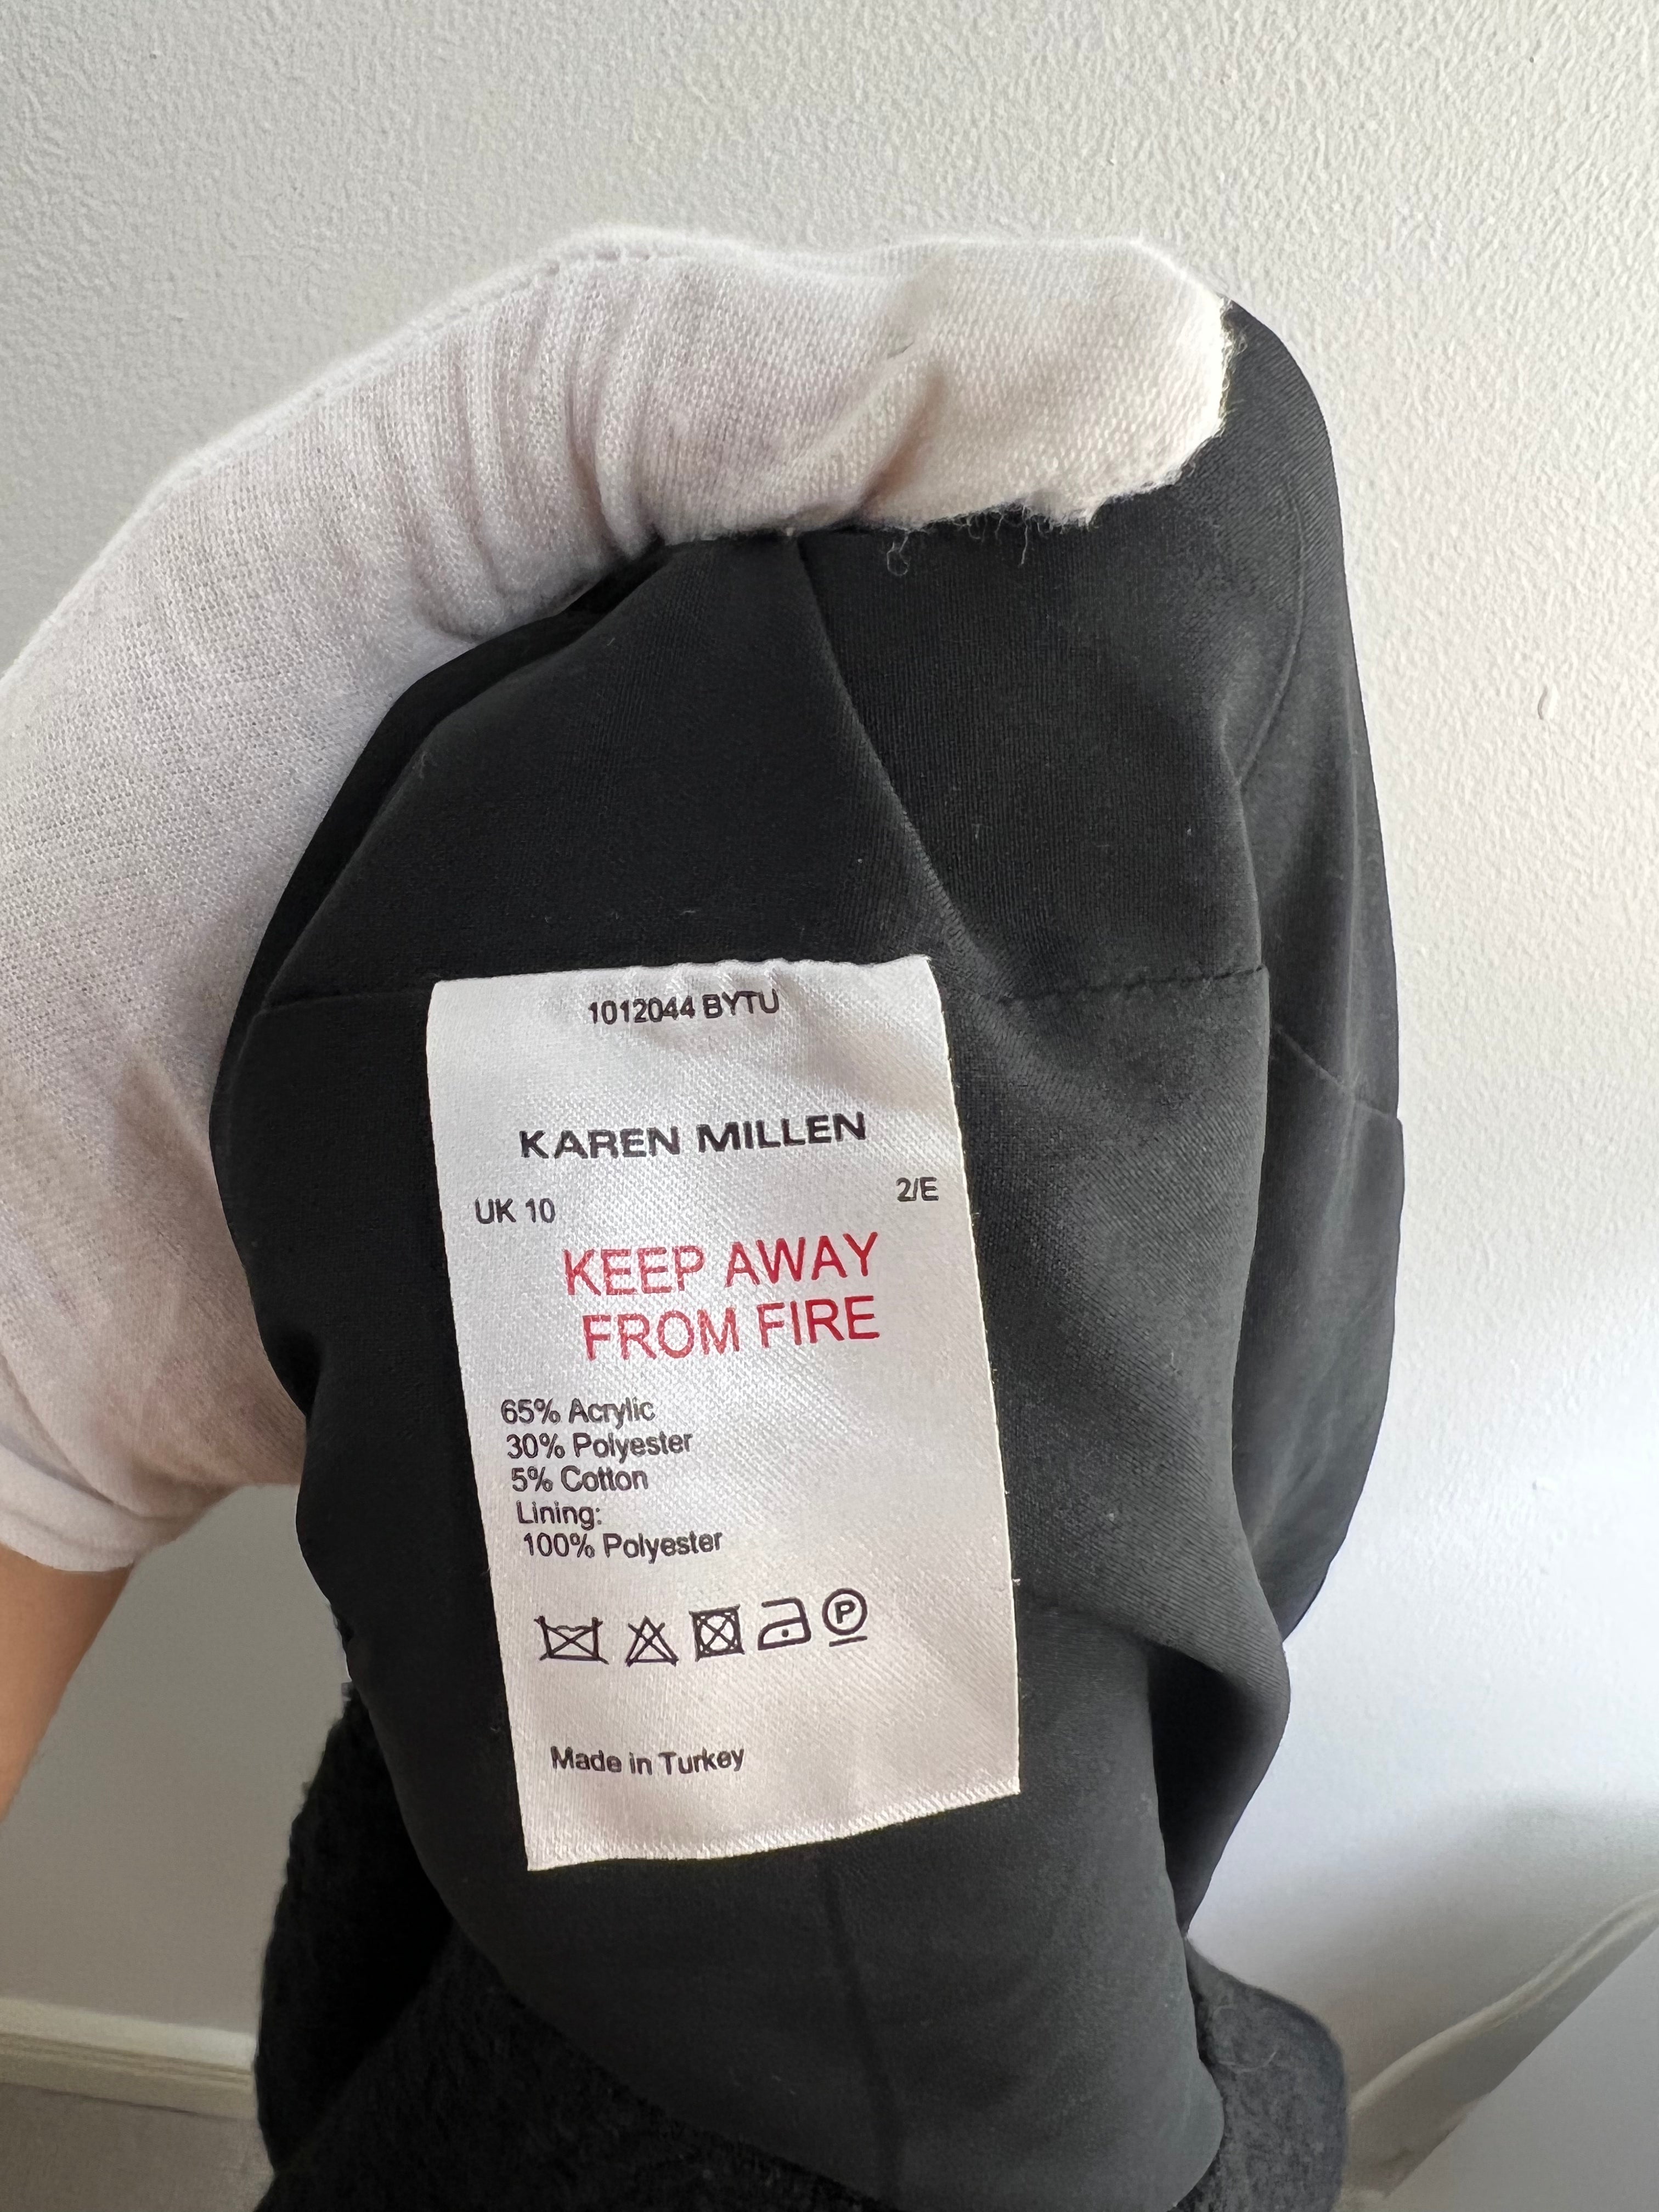 Karen Millen tweed midi black dress - 10 UK